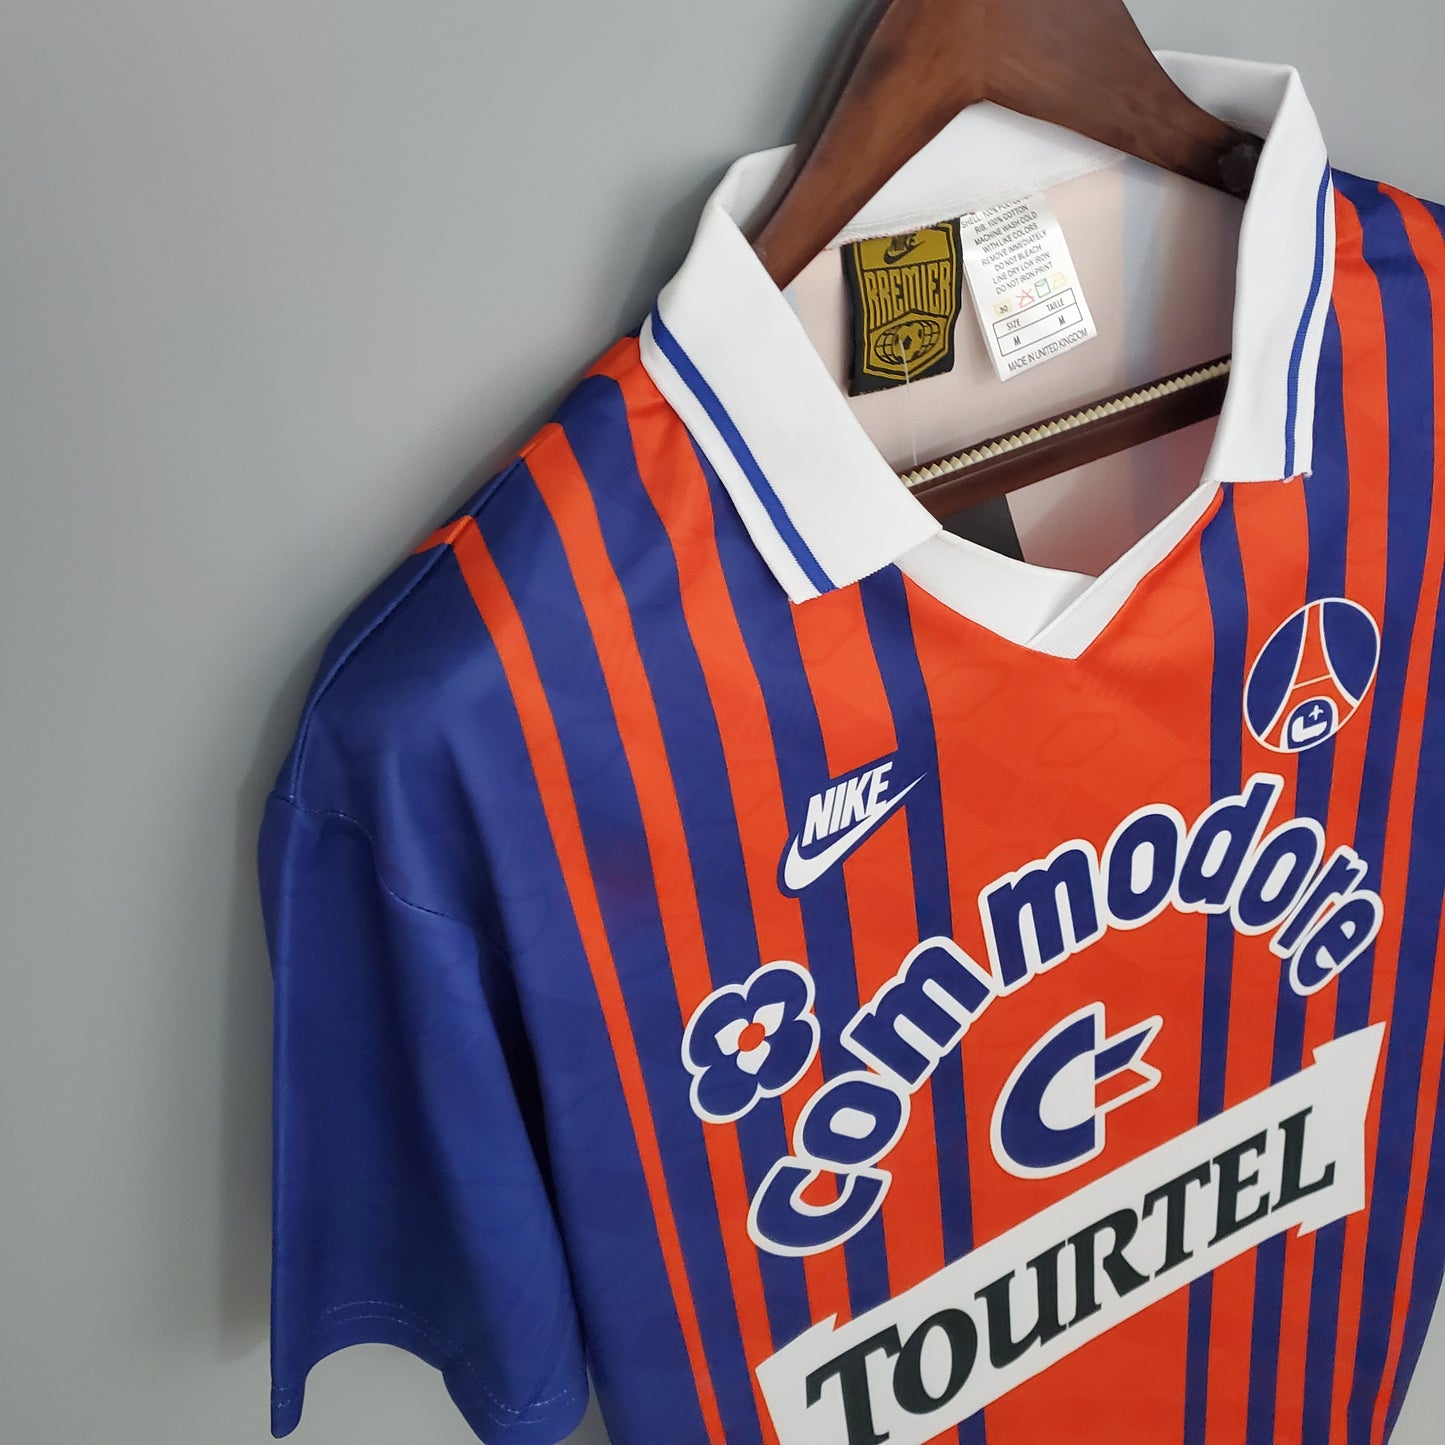 1993/94 Paris Saint Germain Home Shirt